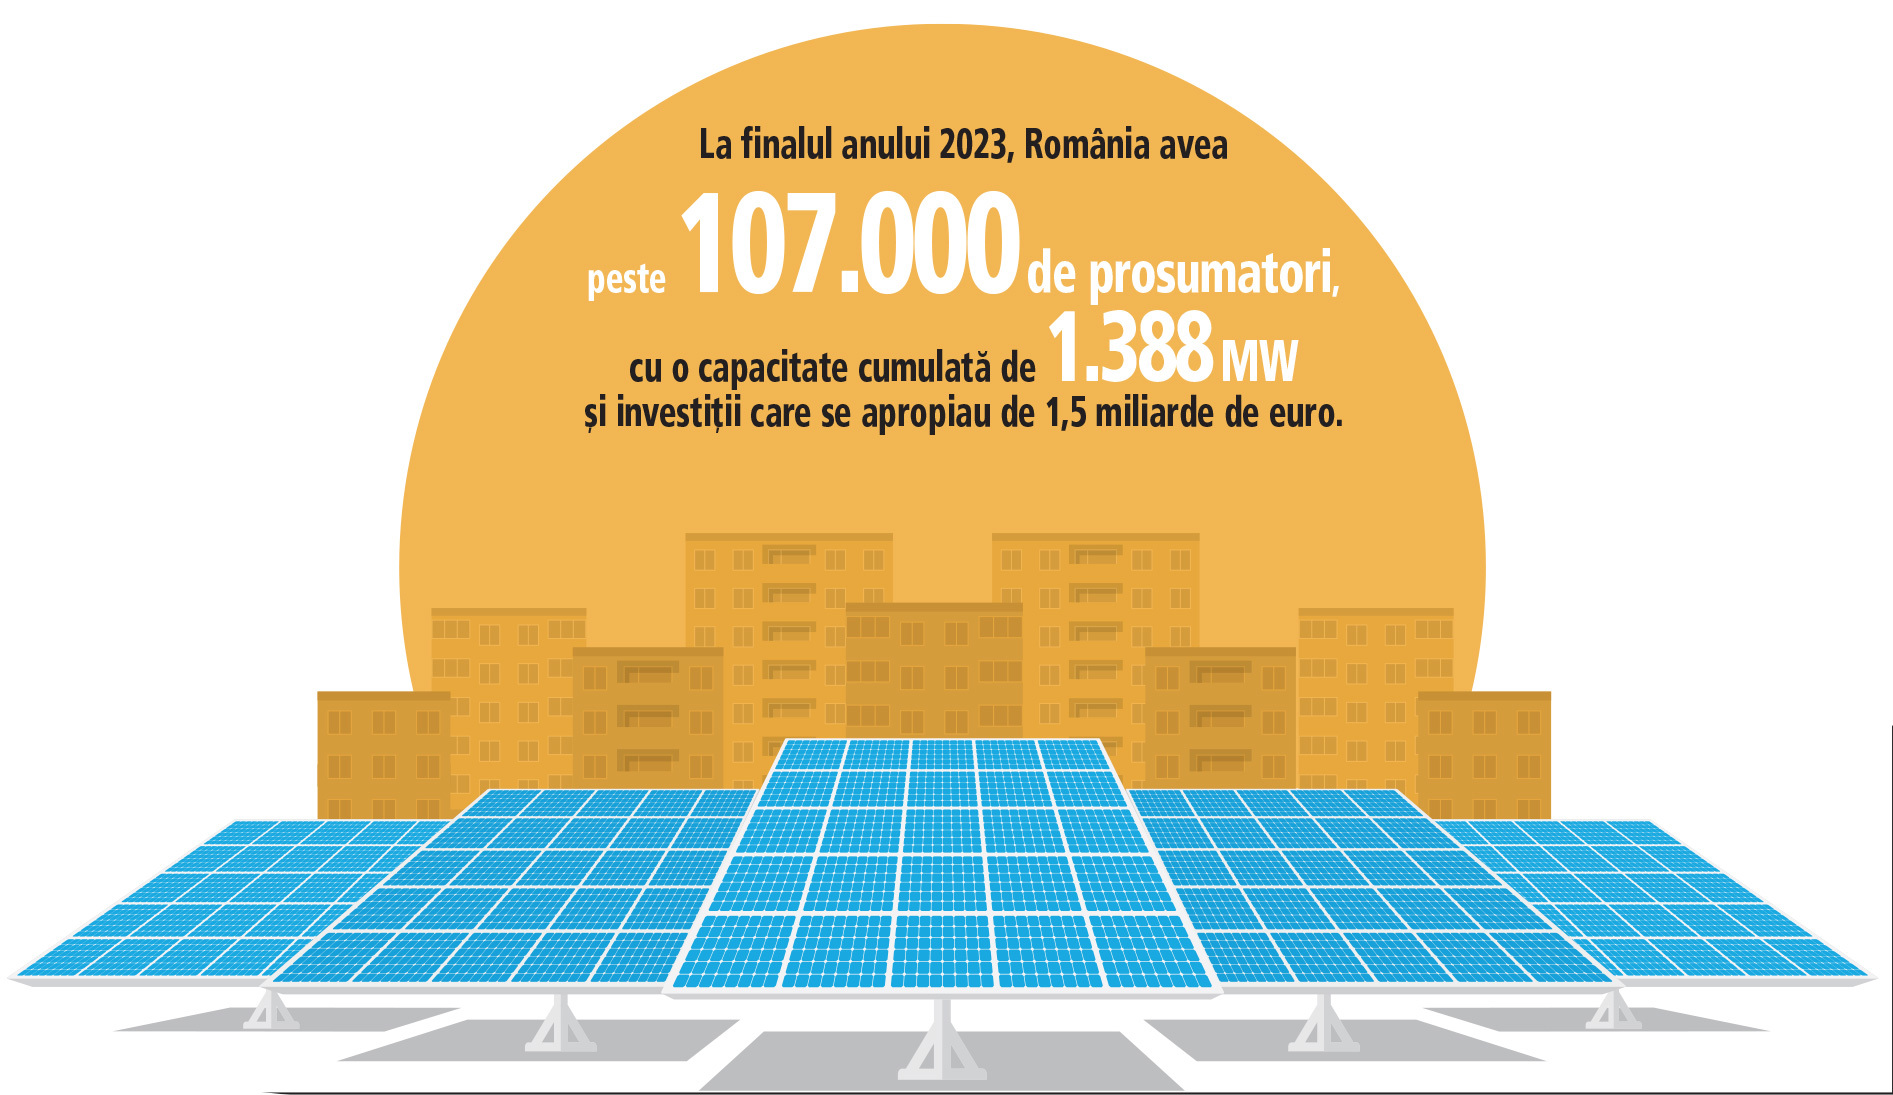 Pagina verde. Firmele de construcţii au luat cu asalt fondurile europene în ultimul an pentru a-şi construi parcuri fotovoltaice. La finalul anului 2023, România avea peste 107.000 de prosumatori, cu o capacitate cumulată de 1.388 MW şi investiţii care se apropiau de 1,5 miliarde de euro